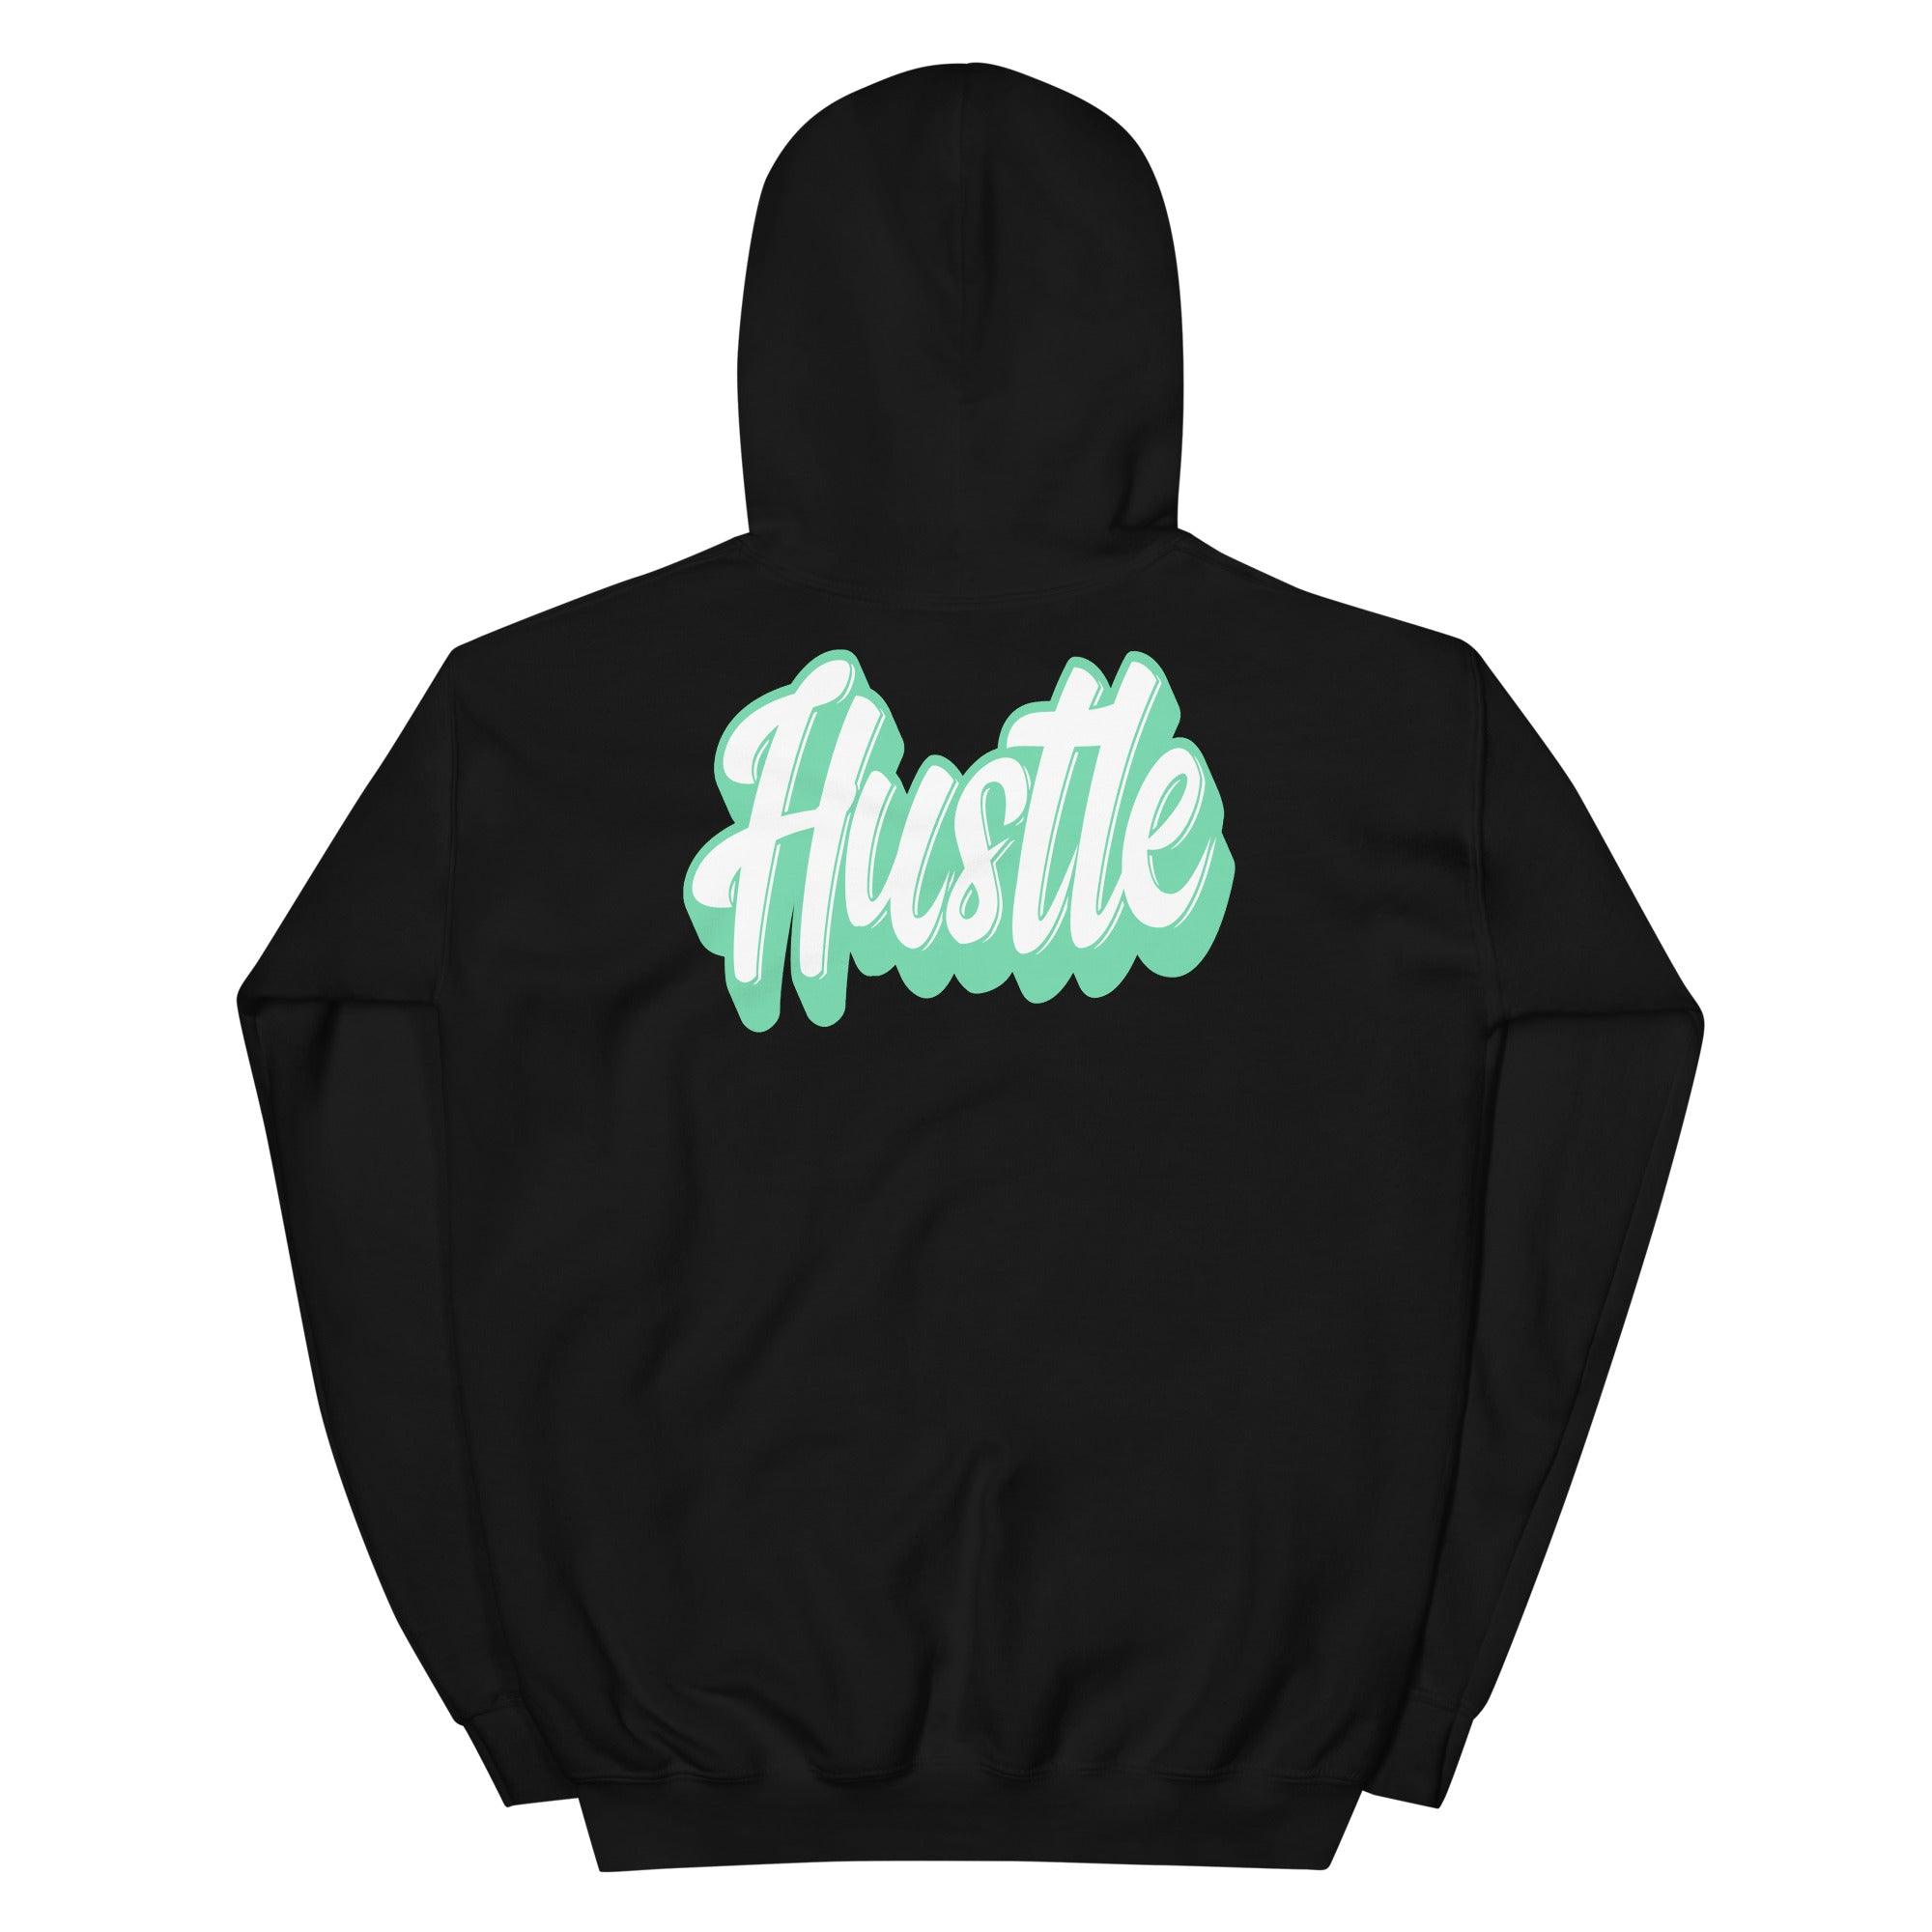 Hustle Sneaker Sweatshirt Nike Dunks Low Green Glow photo